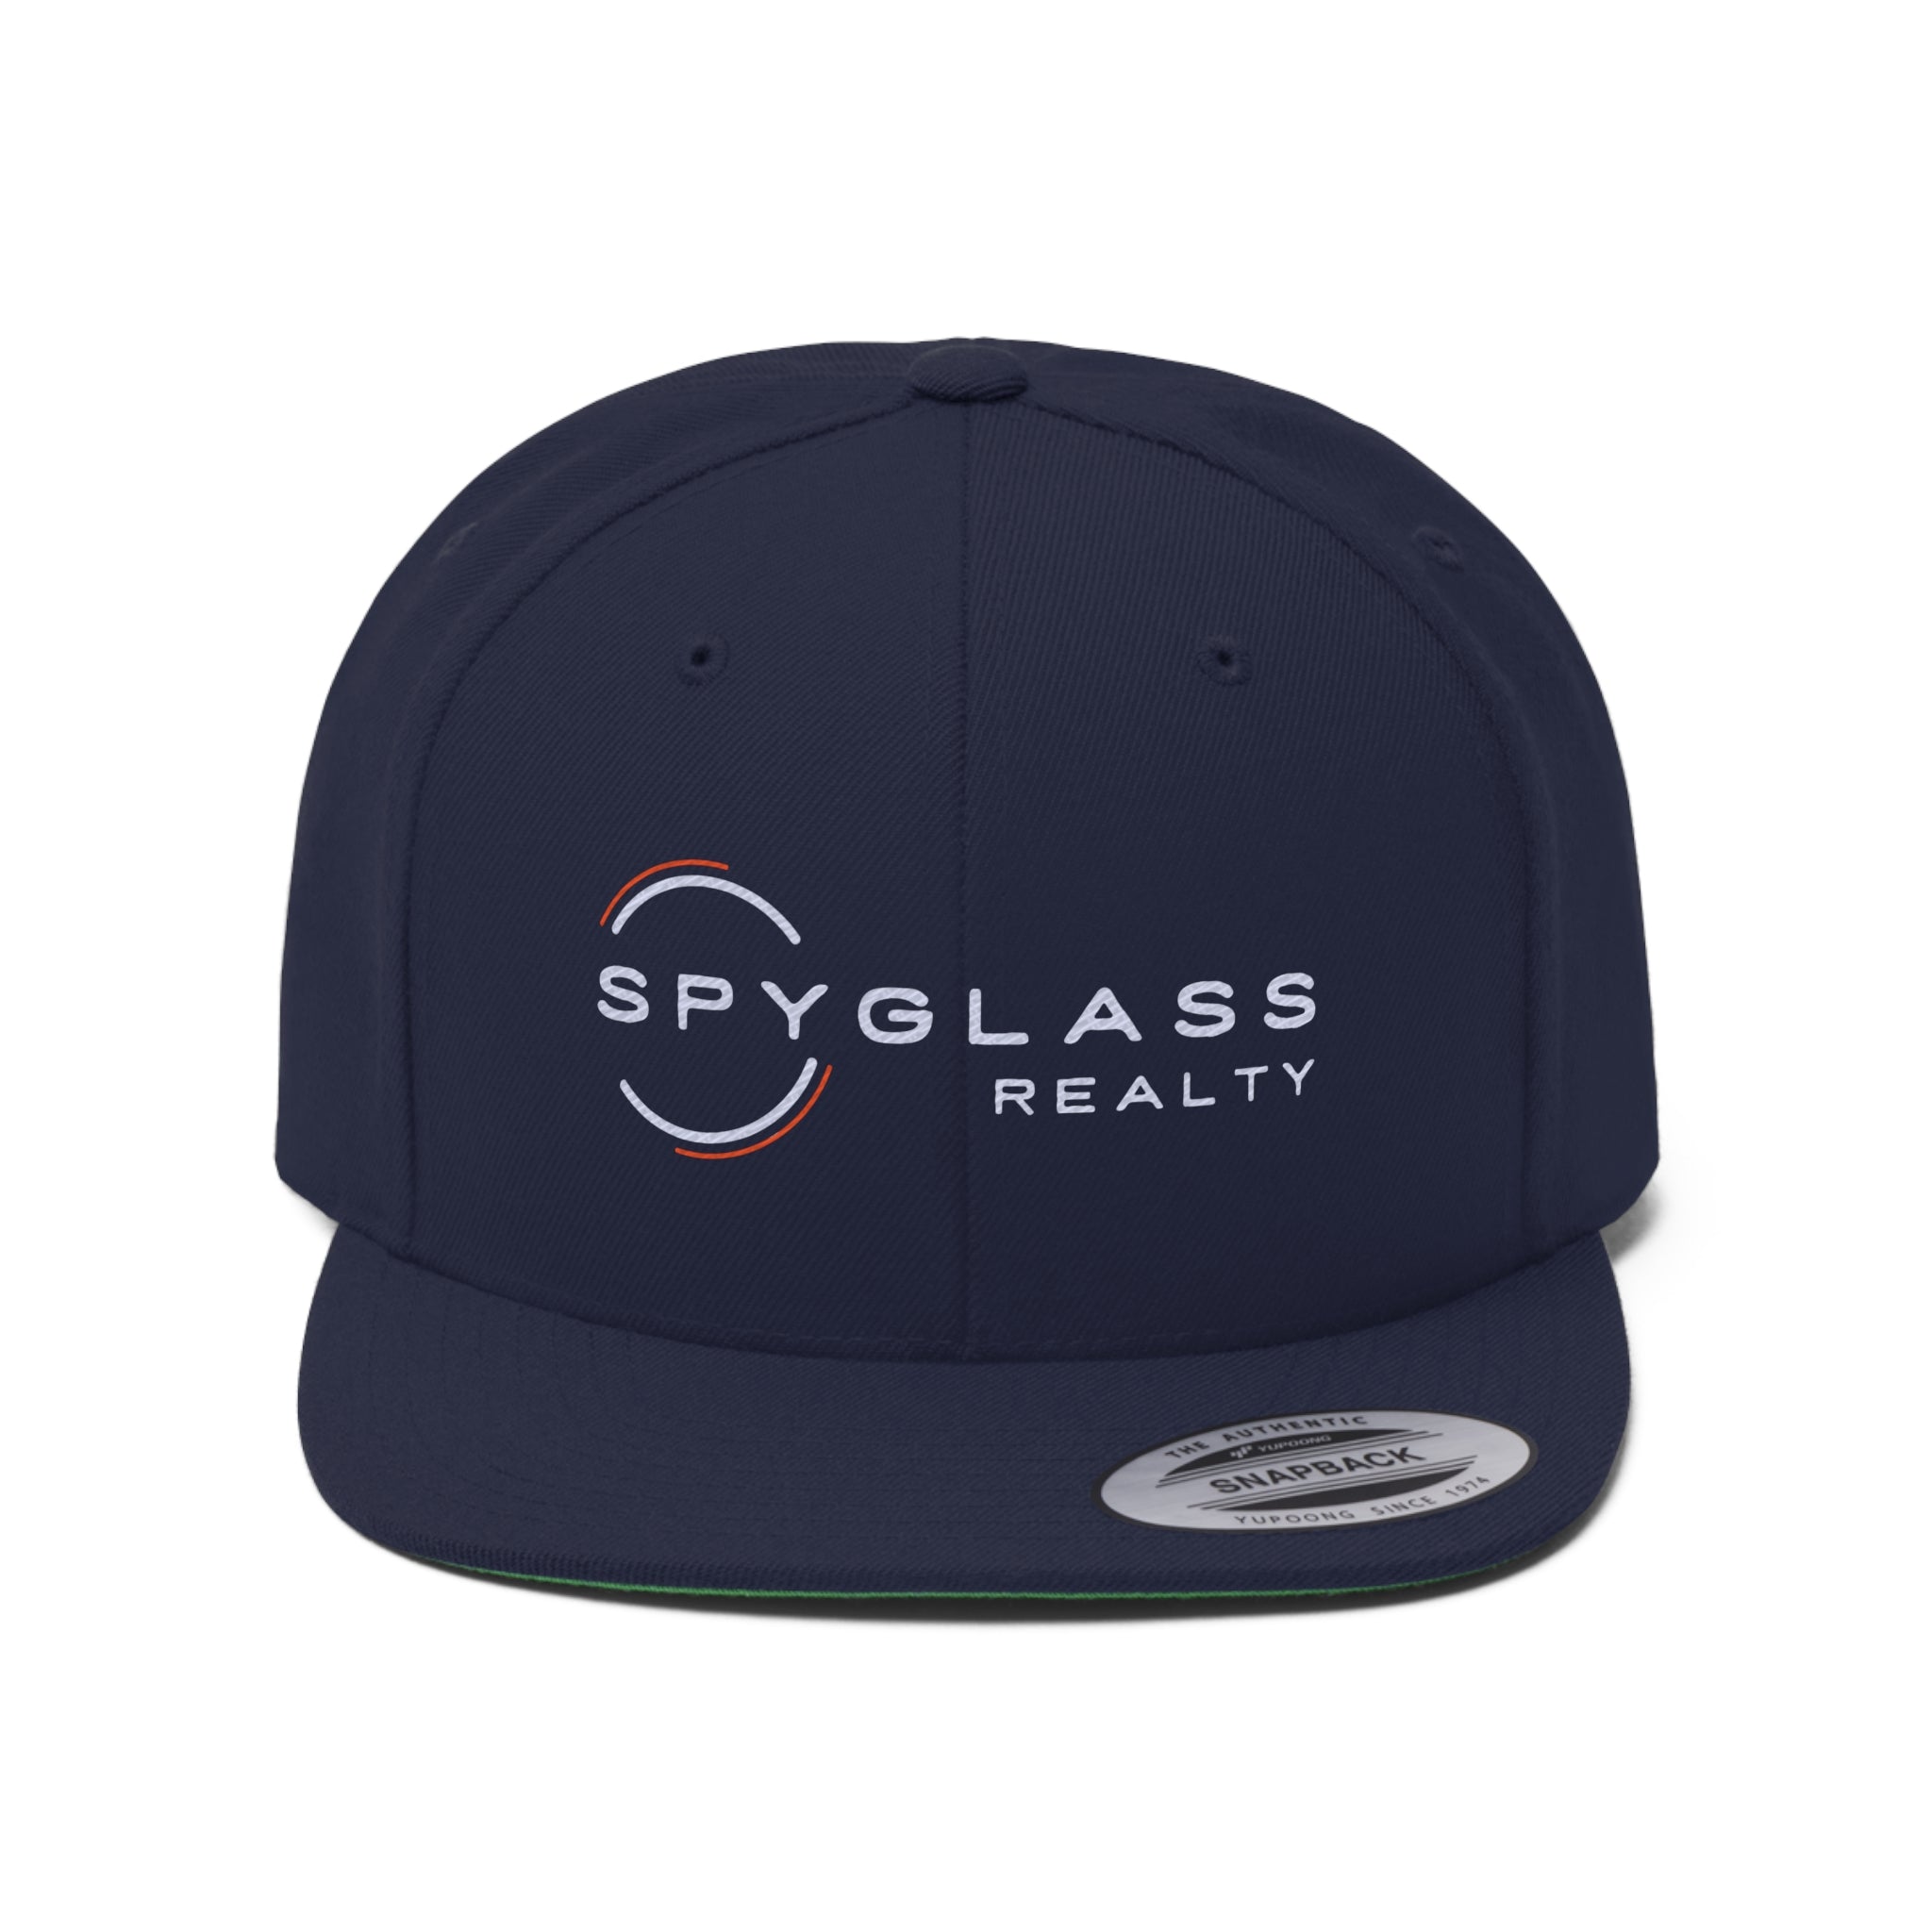 Spyglass Realty Flat Bill Hat